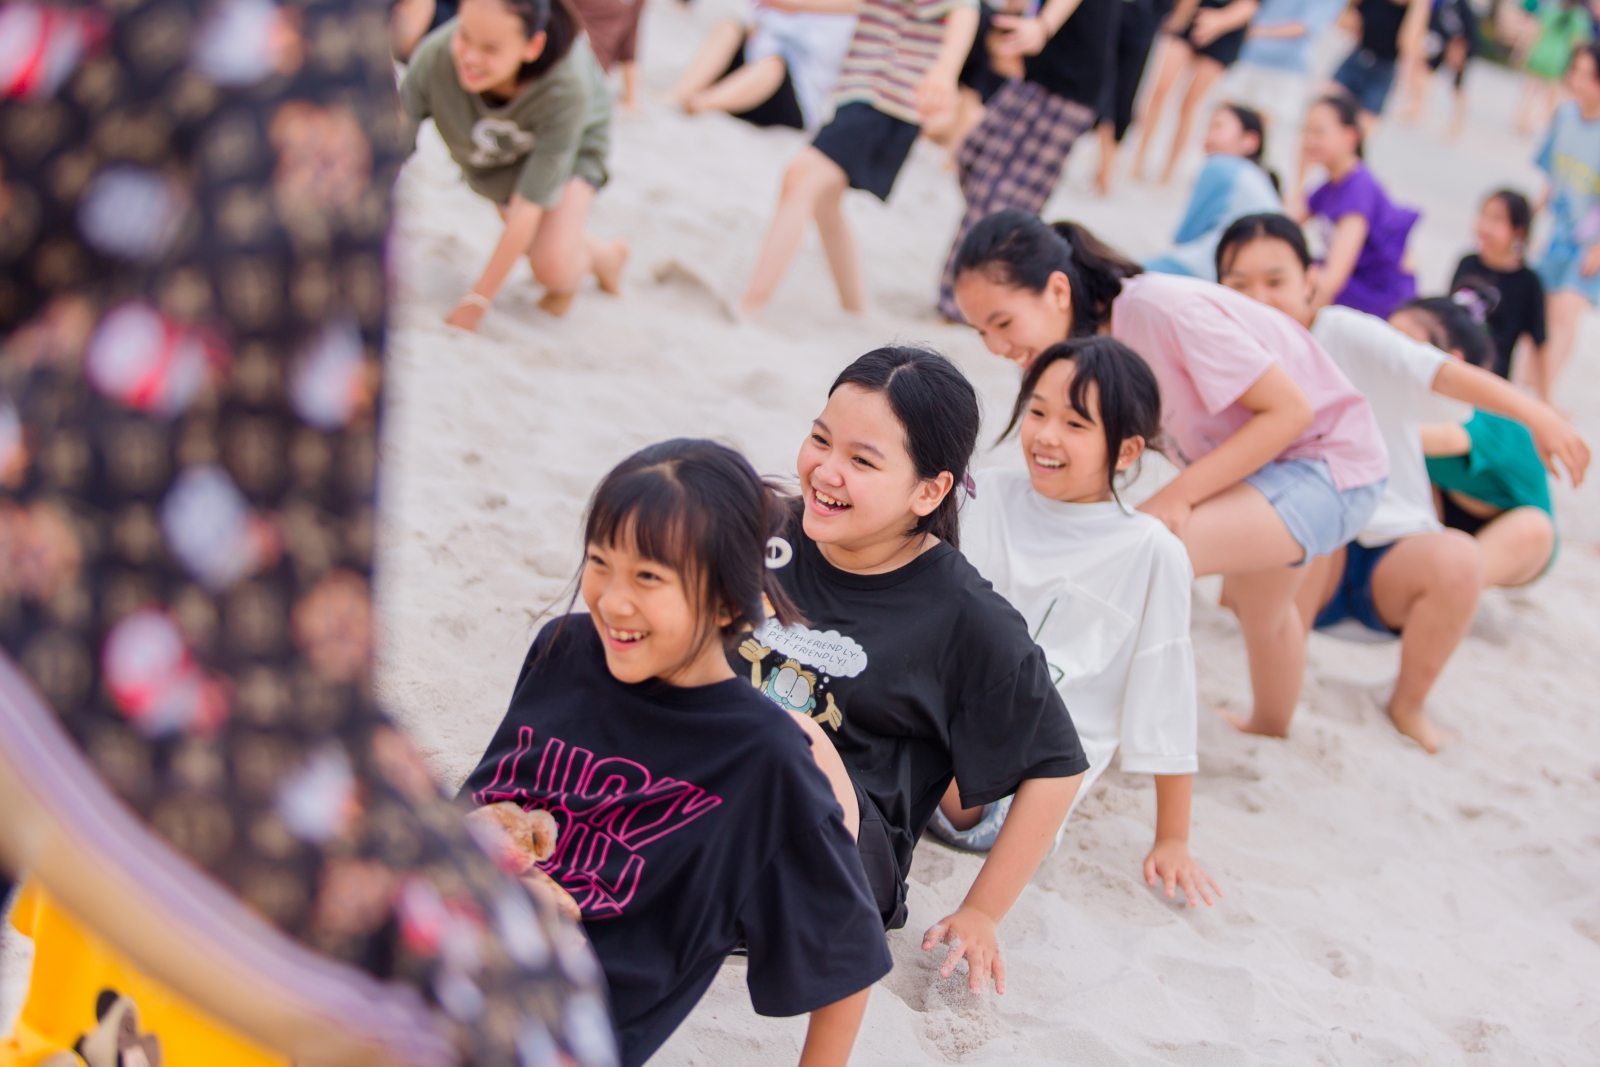 Hoạt động chơi teambuilding trên bãi biển của các em học sinh